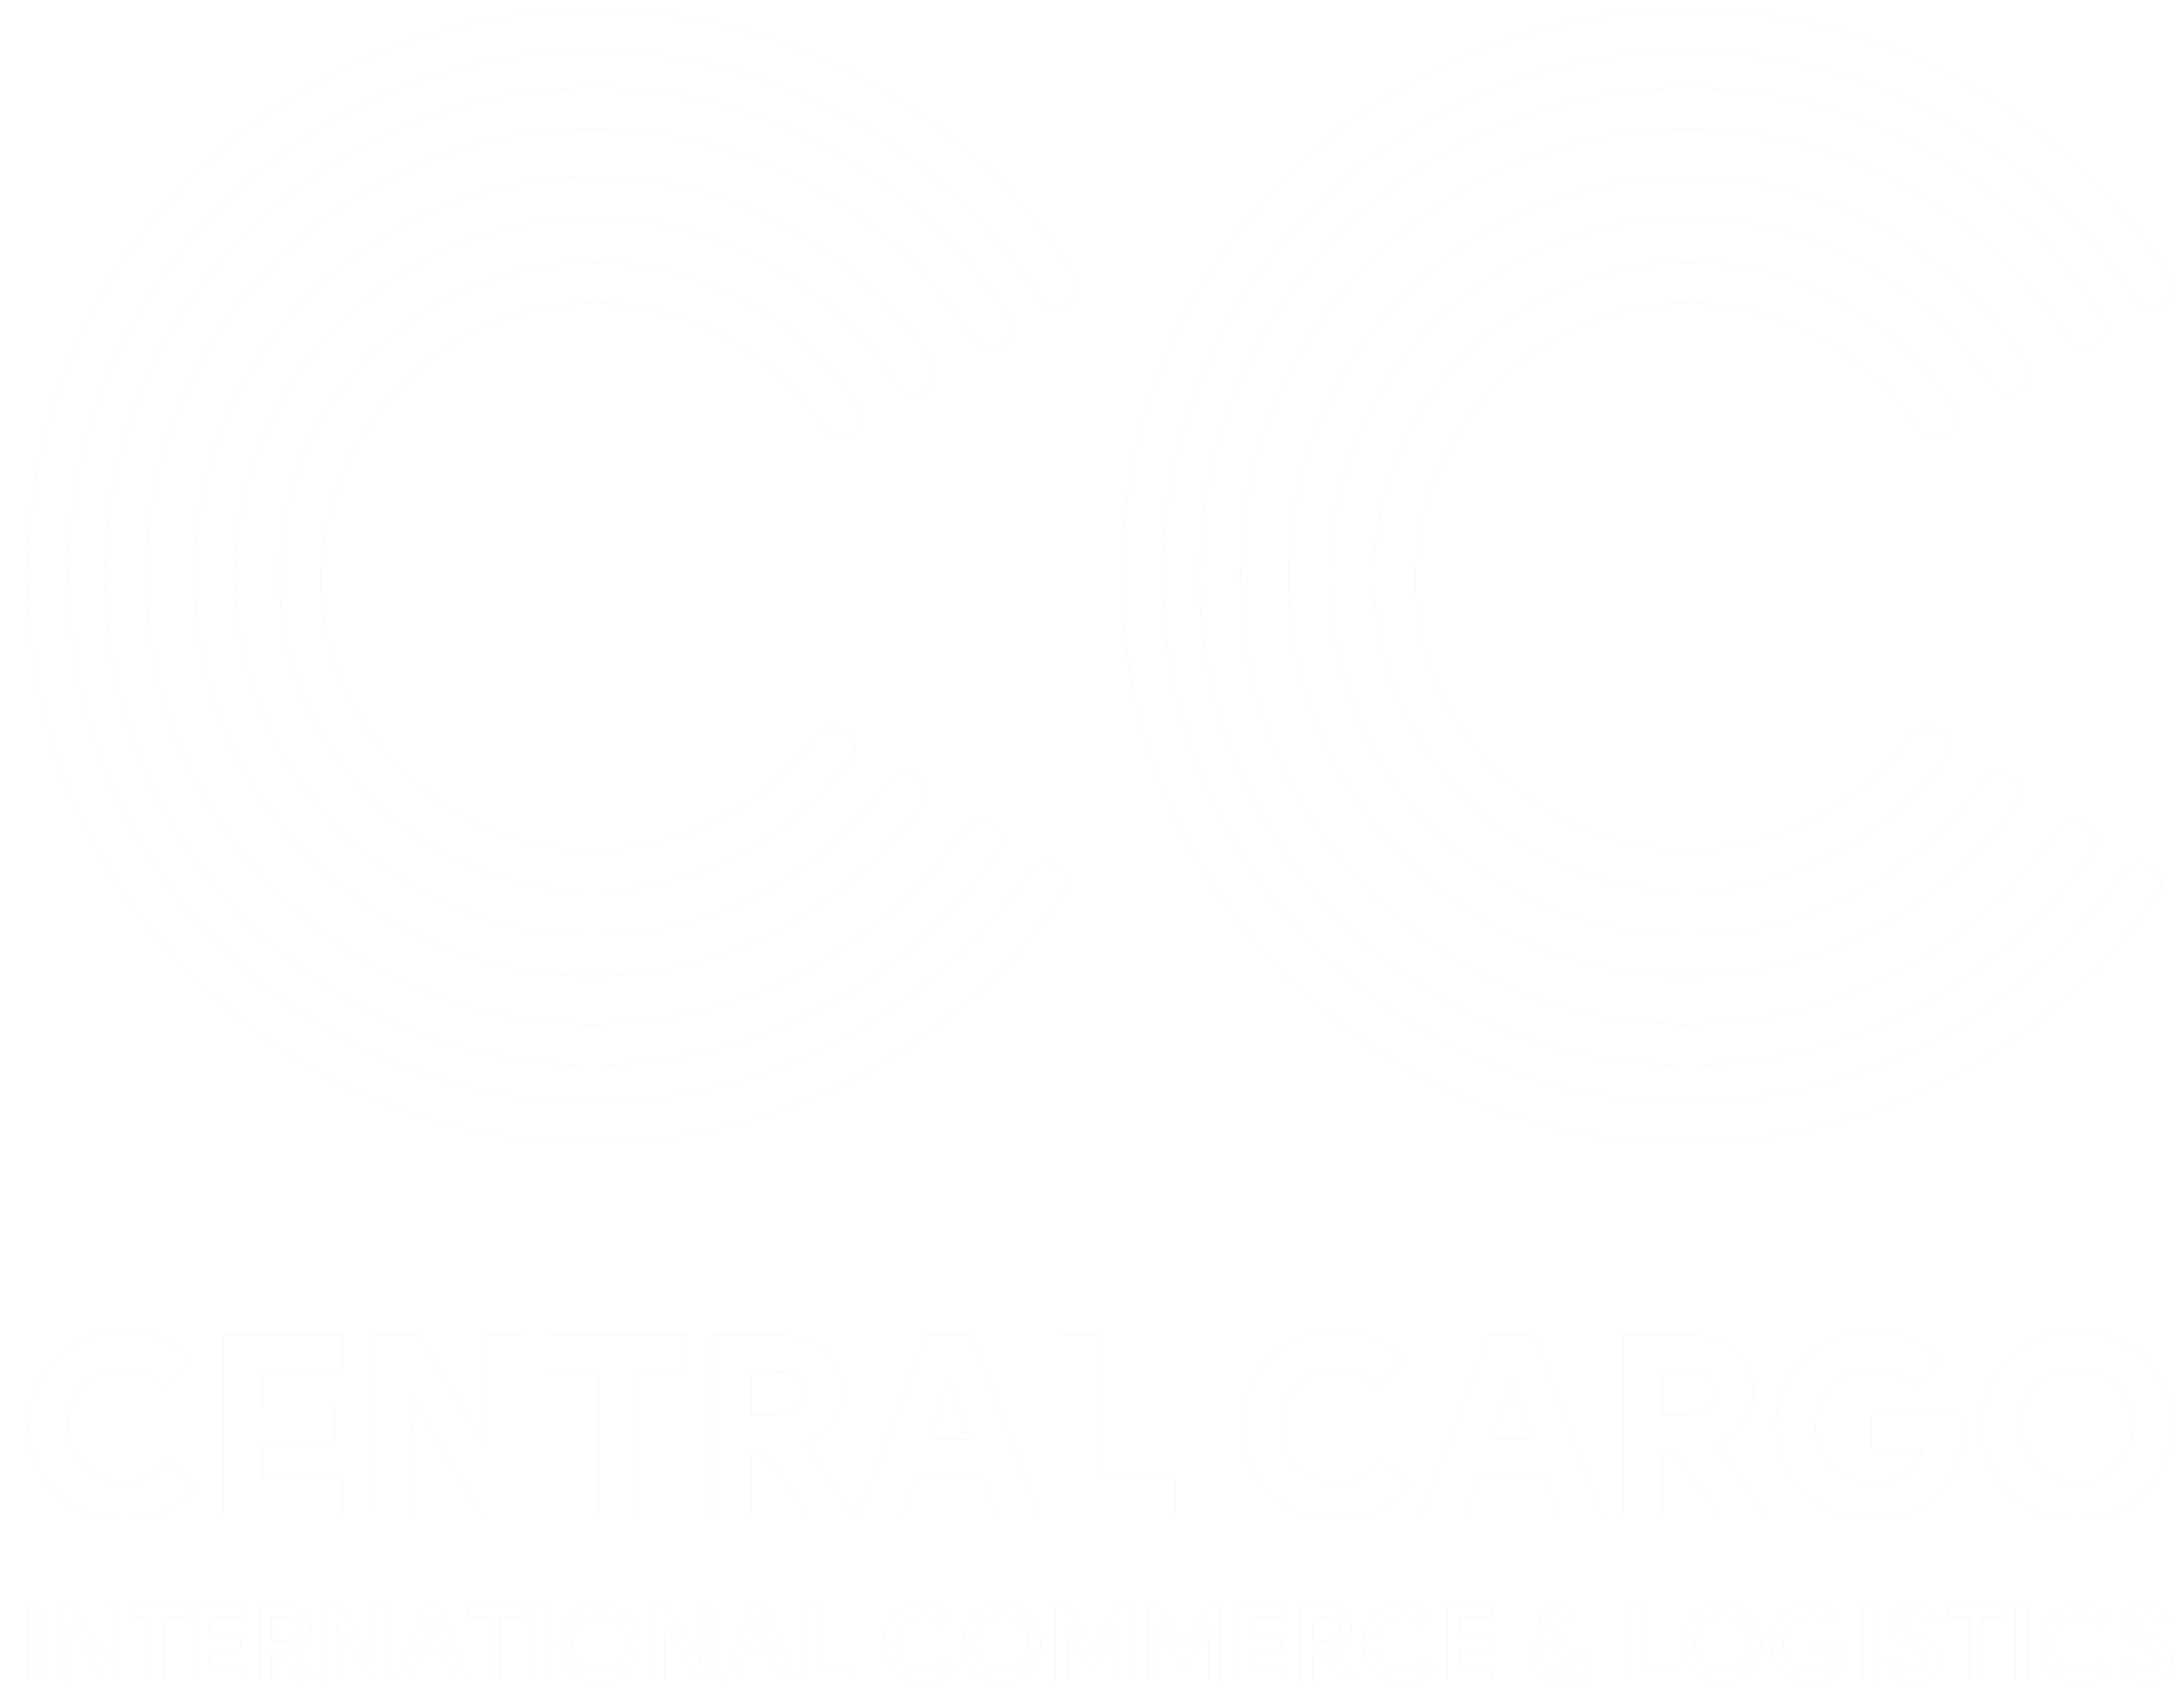 Central Cargo